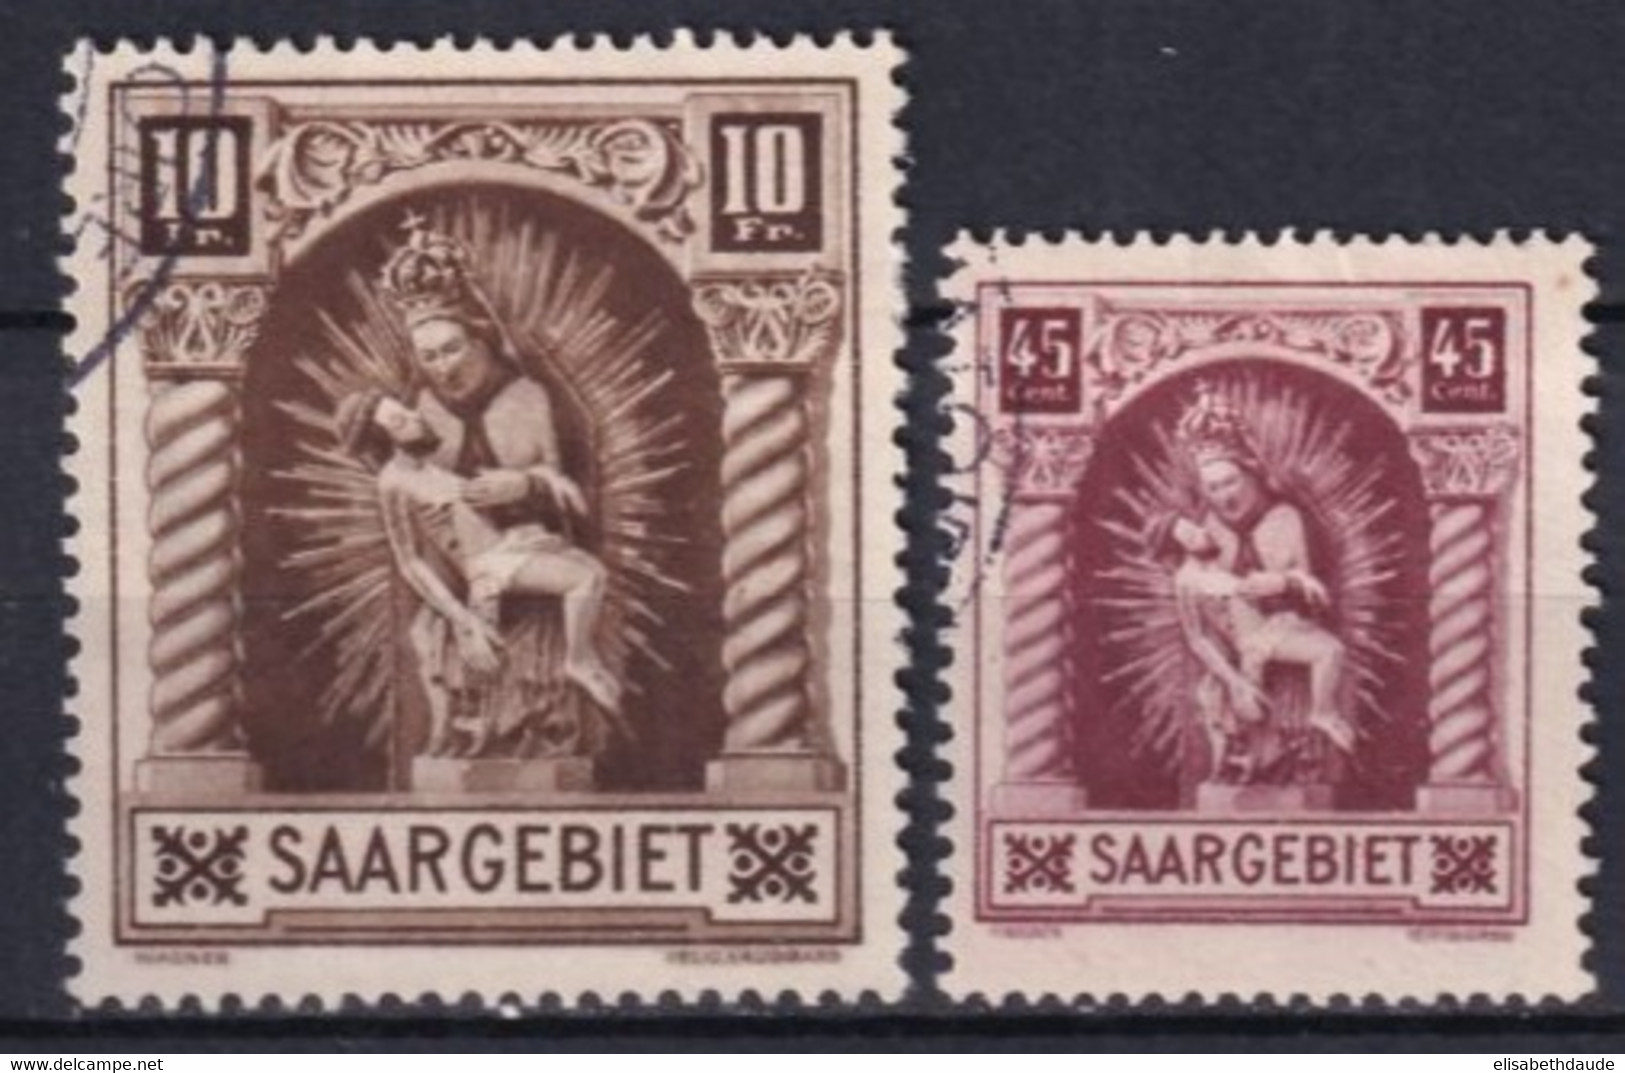 SAAR / SARRE - 1925 - YT N° 101/102 OBLITERES - COTE = 42 EUR. - Oblitérés